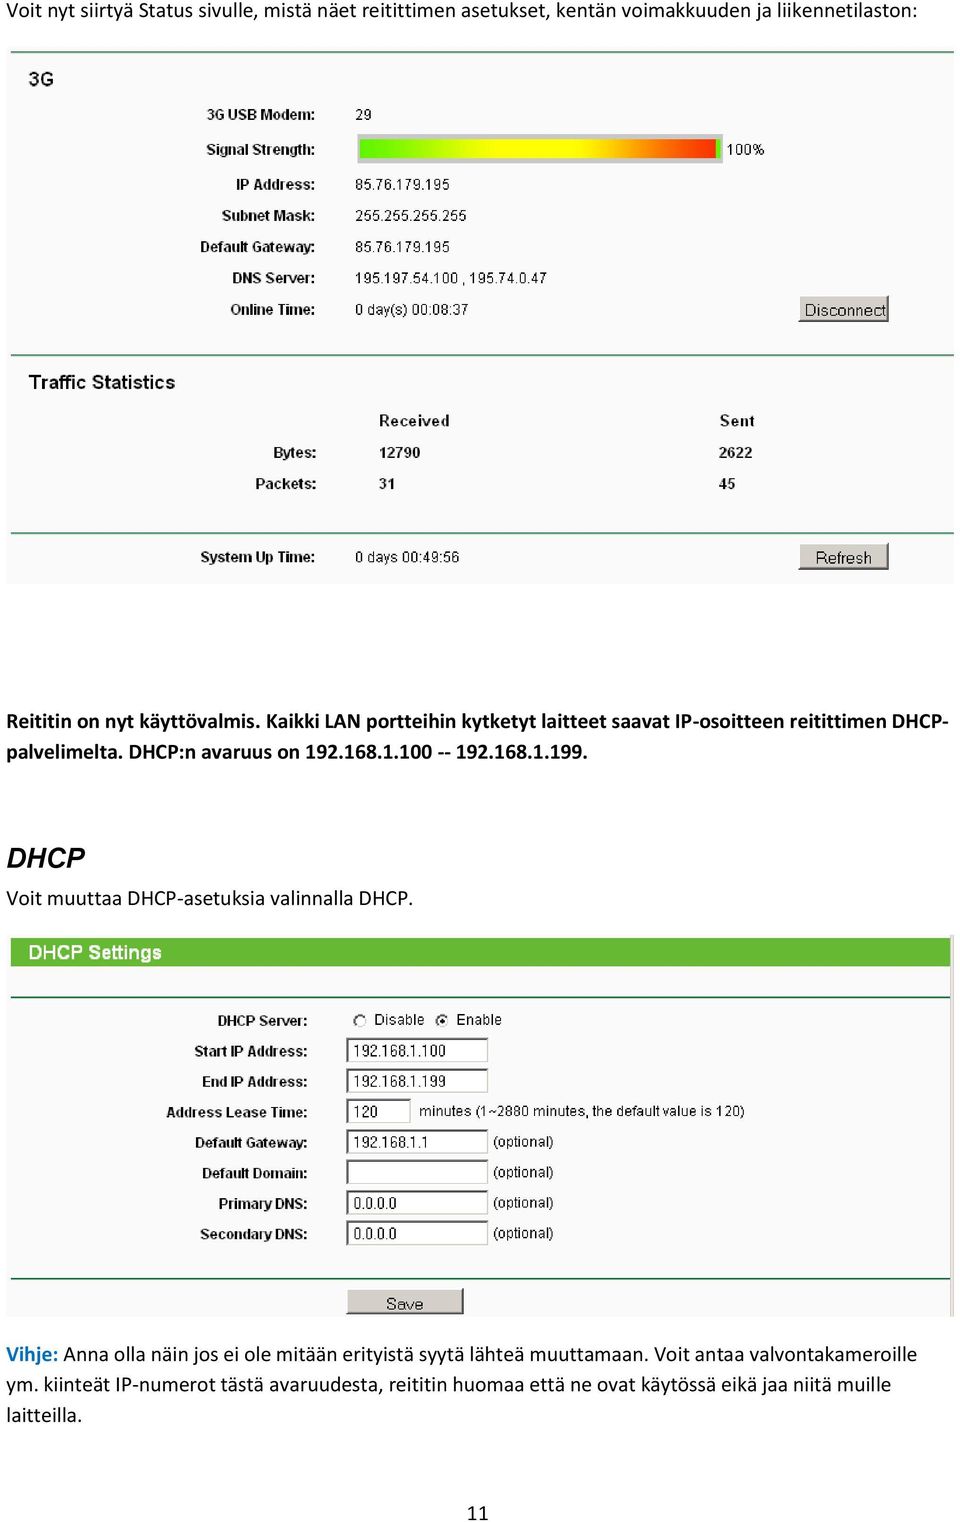 DHCP Vit muuttaa DHCP-asetuksia valinnalla DHCP. Vihje: Anna lla näin js ei le mitään erityistä syytä lähteä muuttamaan.